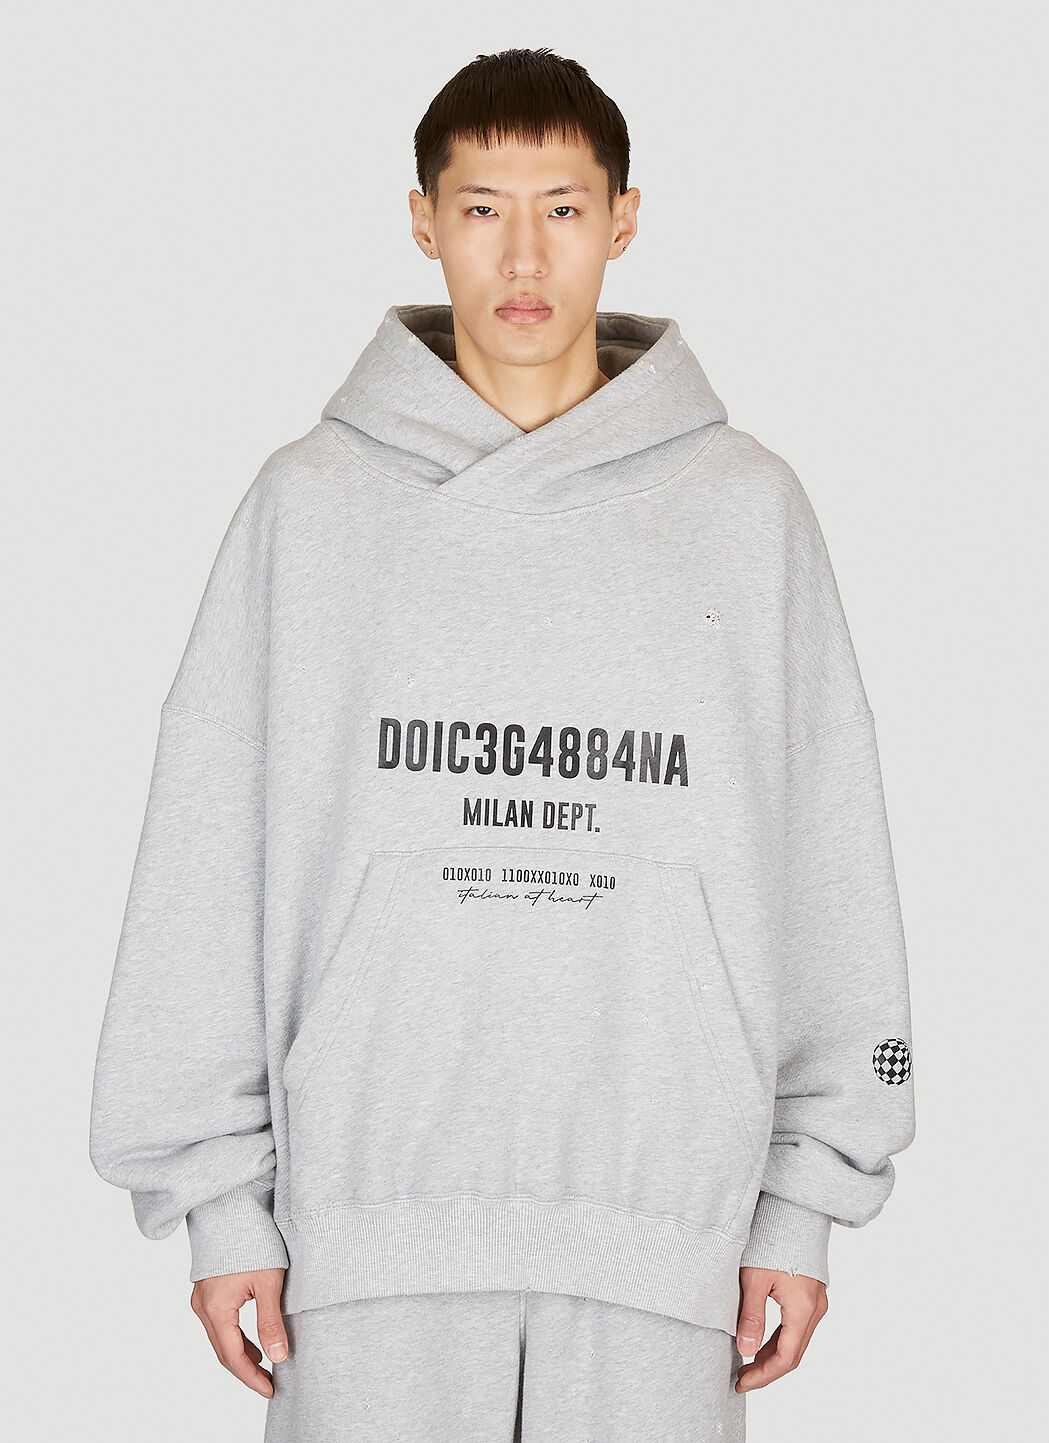 Dolce & Gabbana ロゴプリント フード付きスウェットシャツ グレー dol0154003